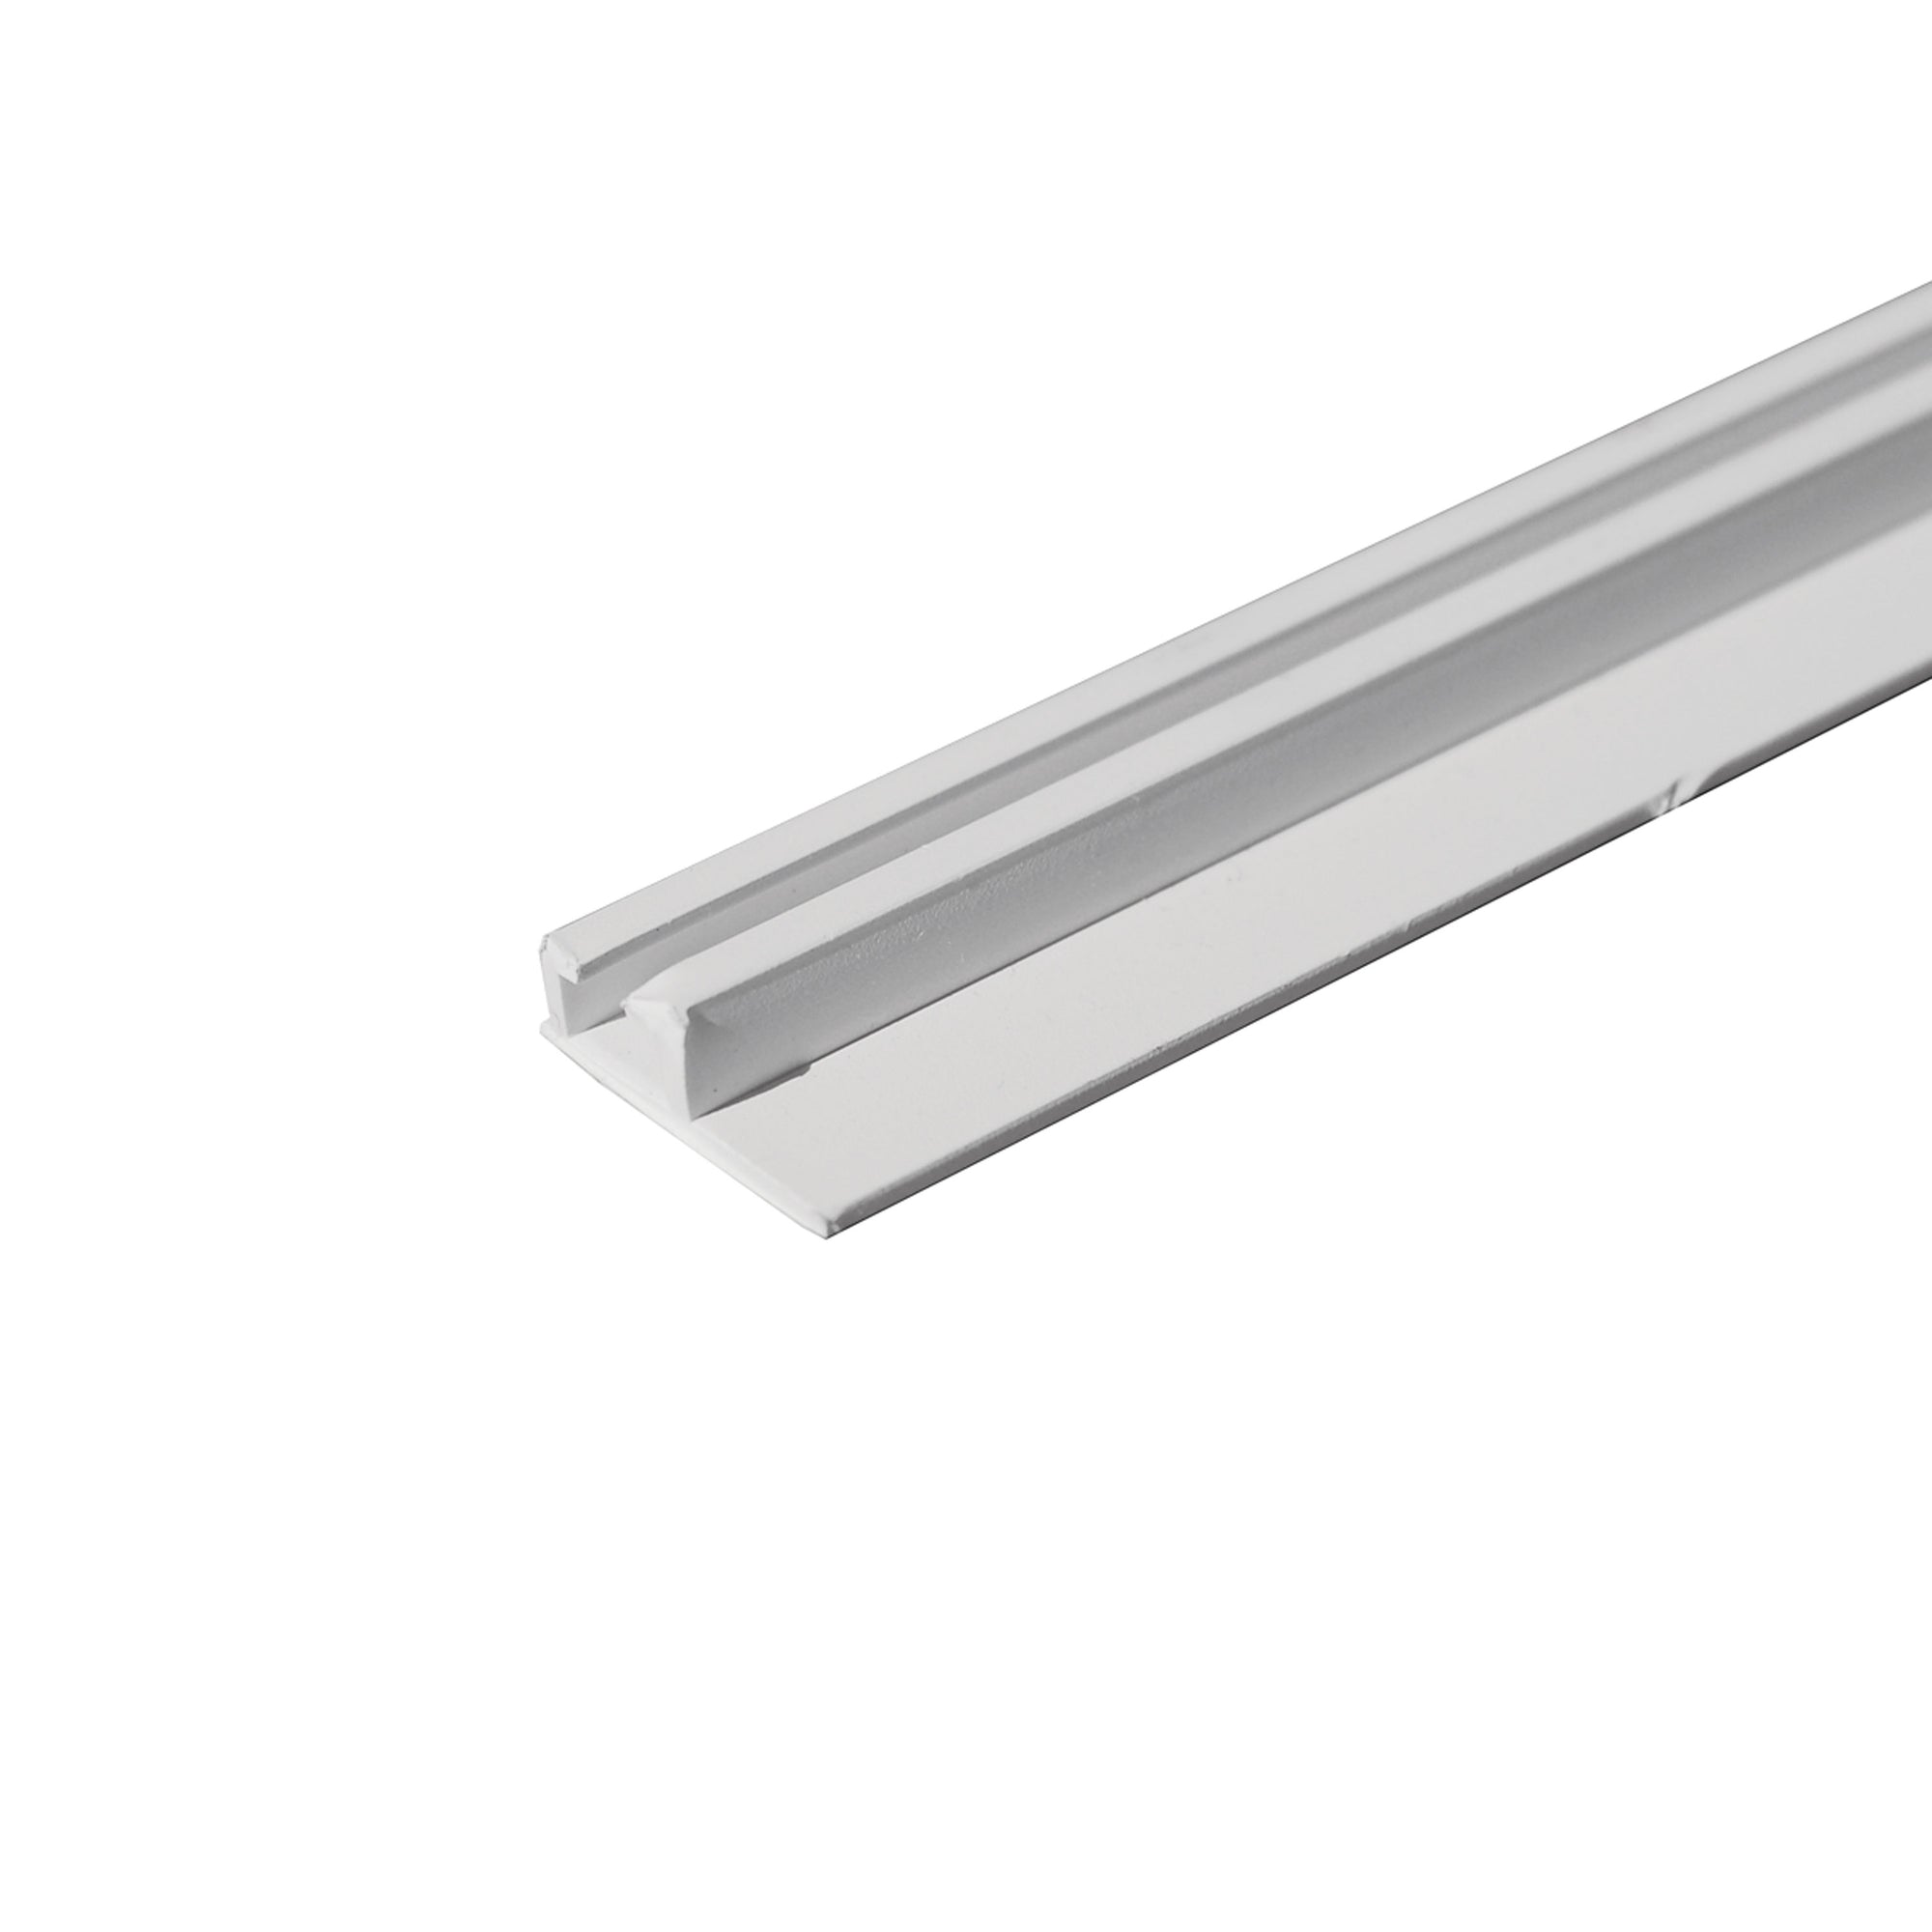 RV Designer A206W Internal Ceiling Slide Track - White, 96"